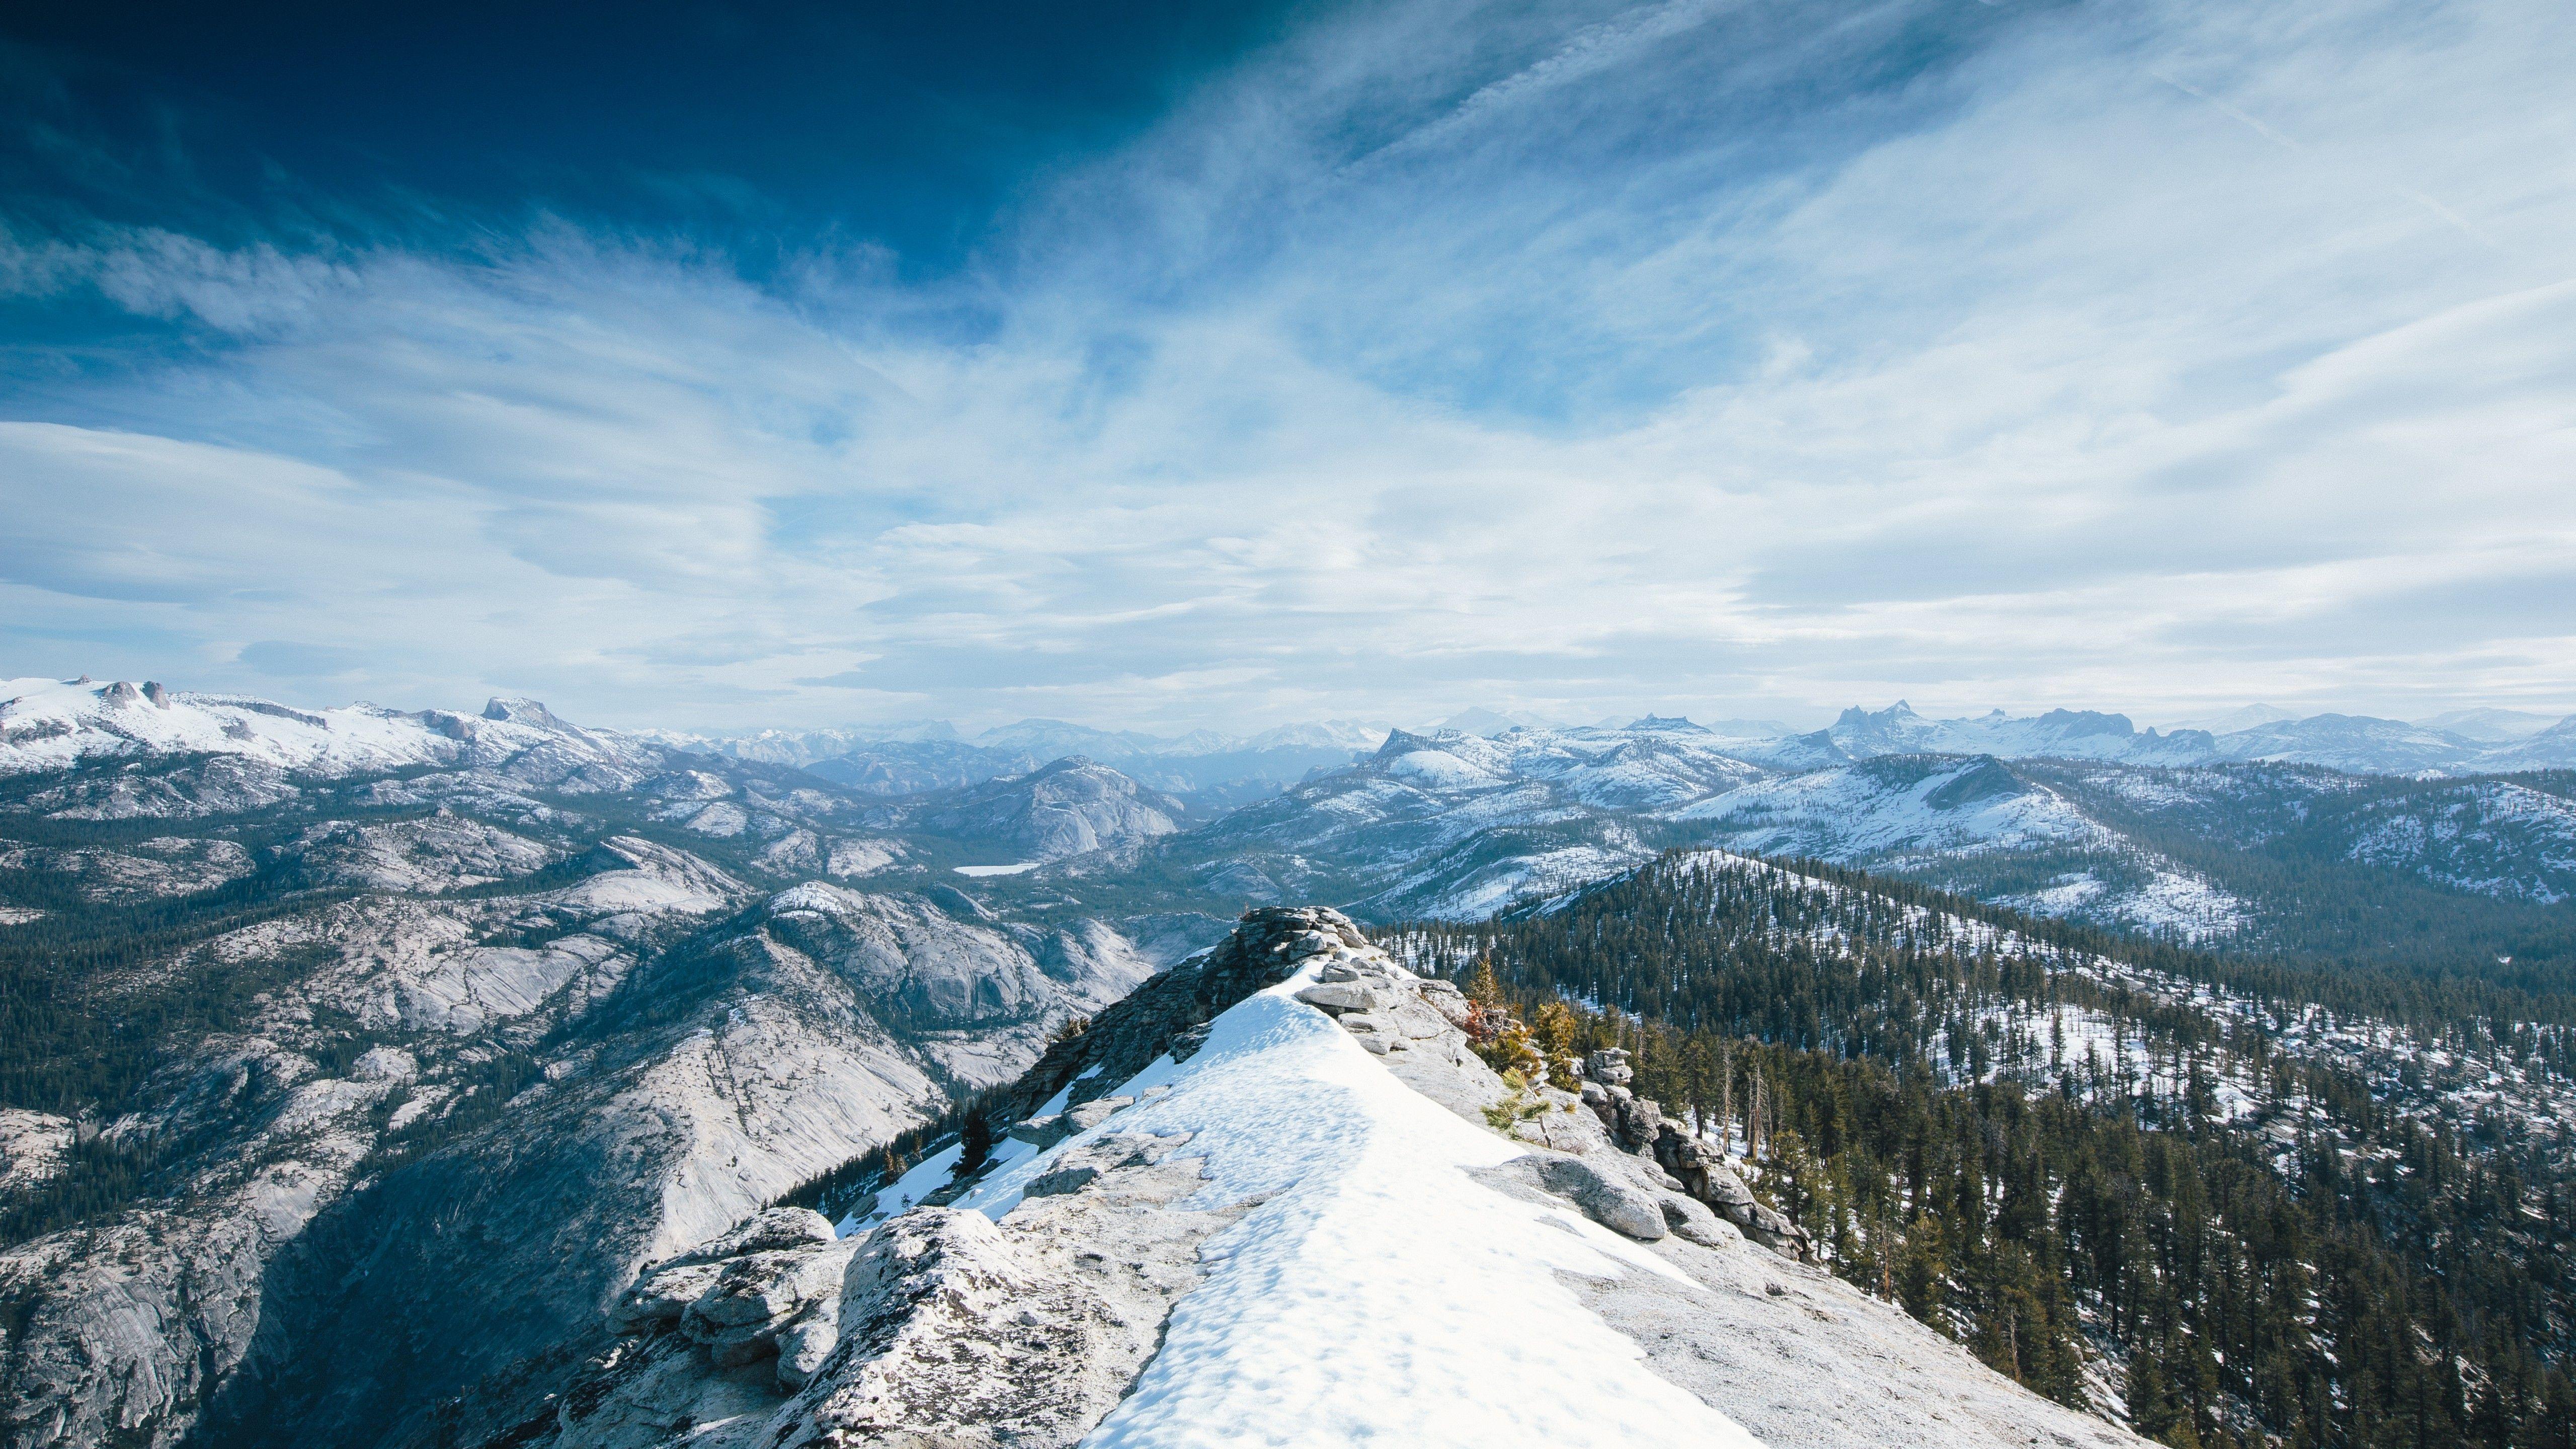 Wallpapers Yosemite, 5k, 4k wallpaper, 8k, winter, snow, forest, OSX